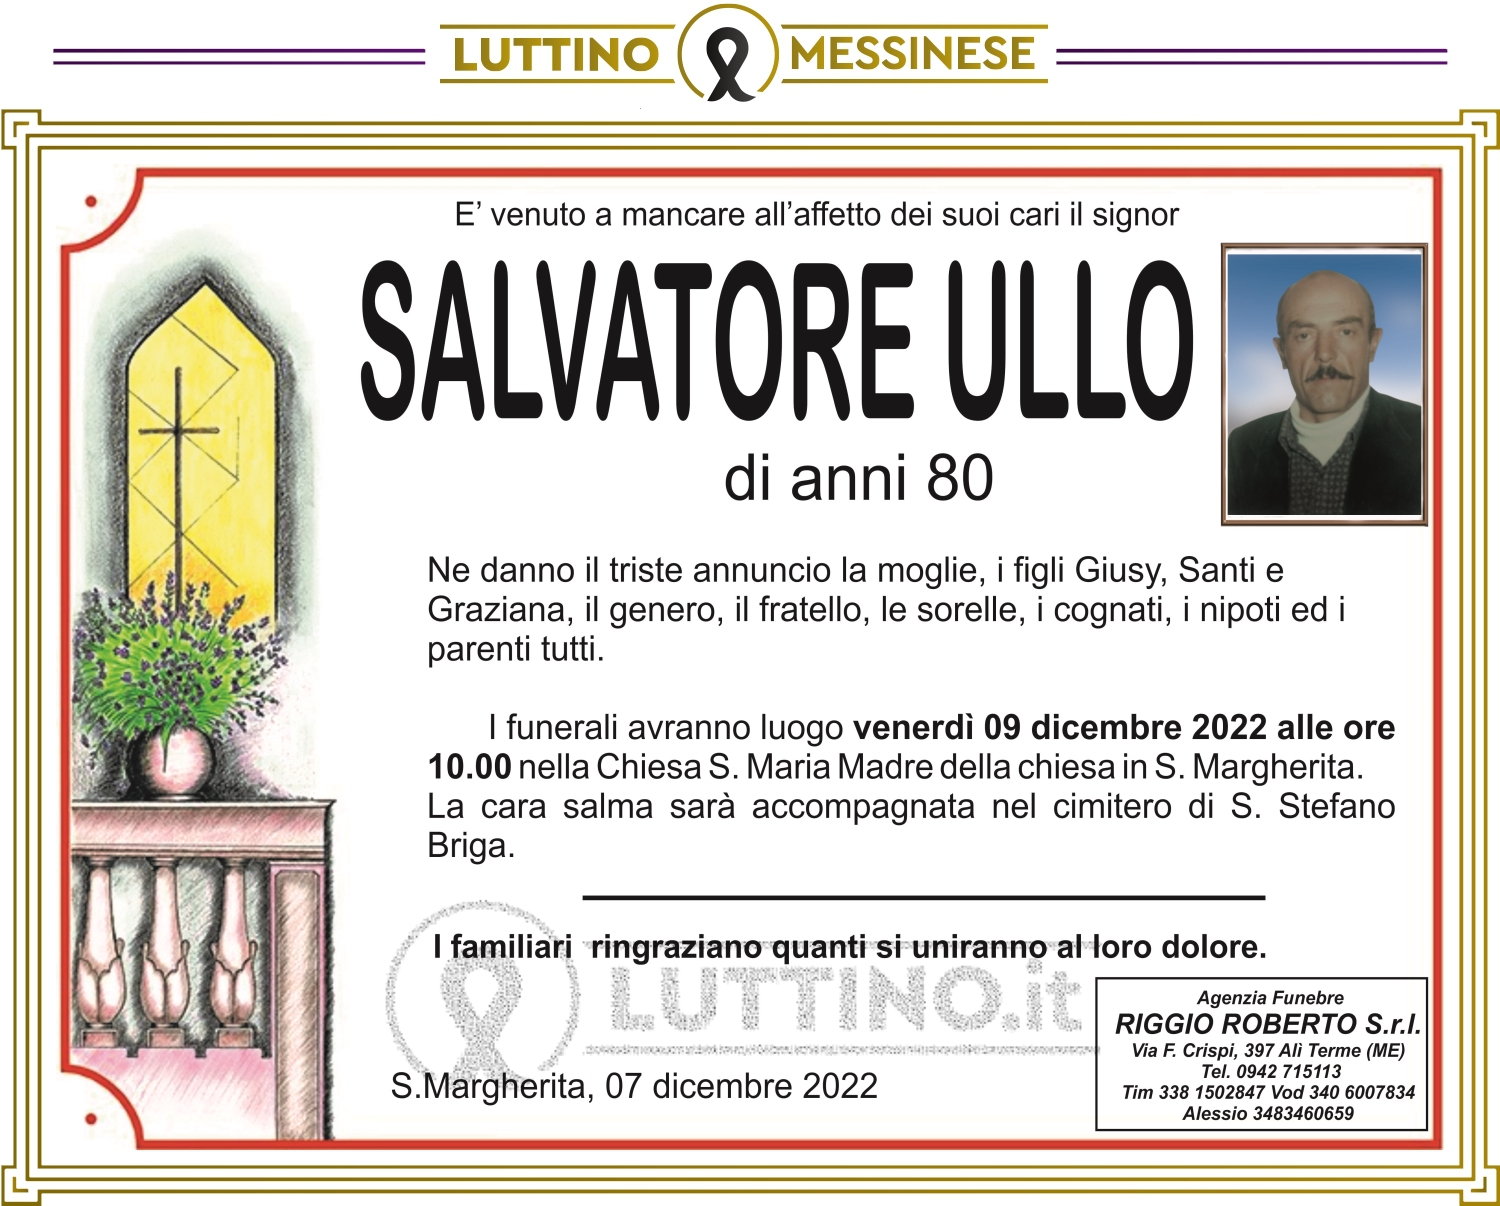 Salvatore Ullo